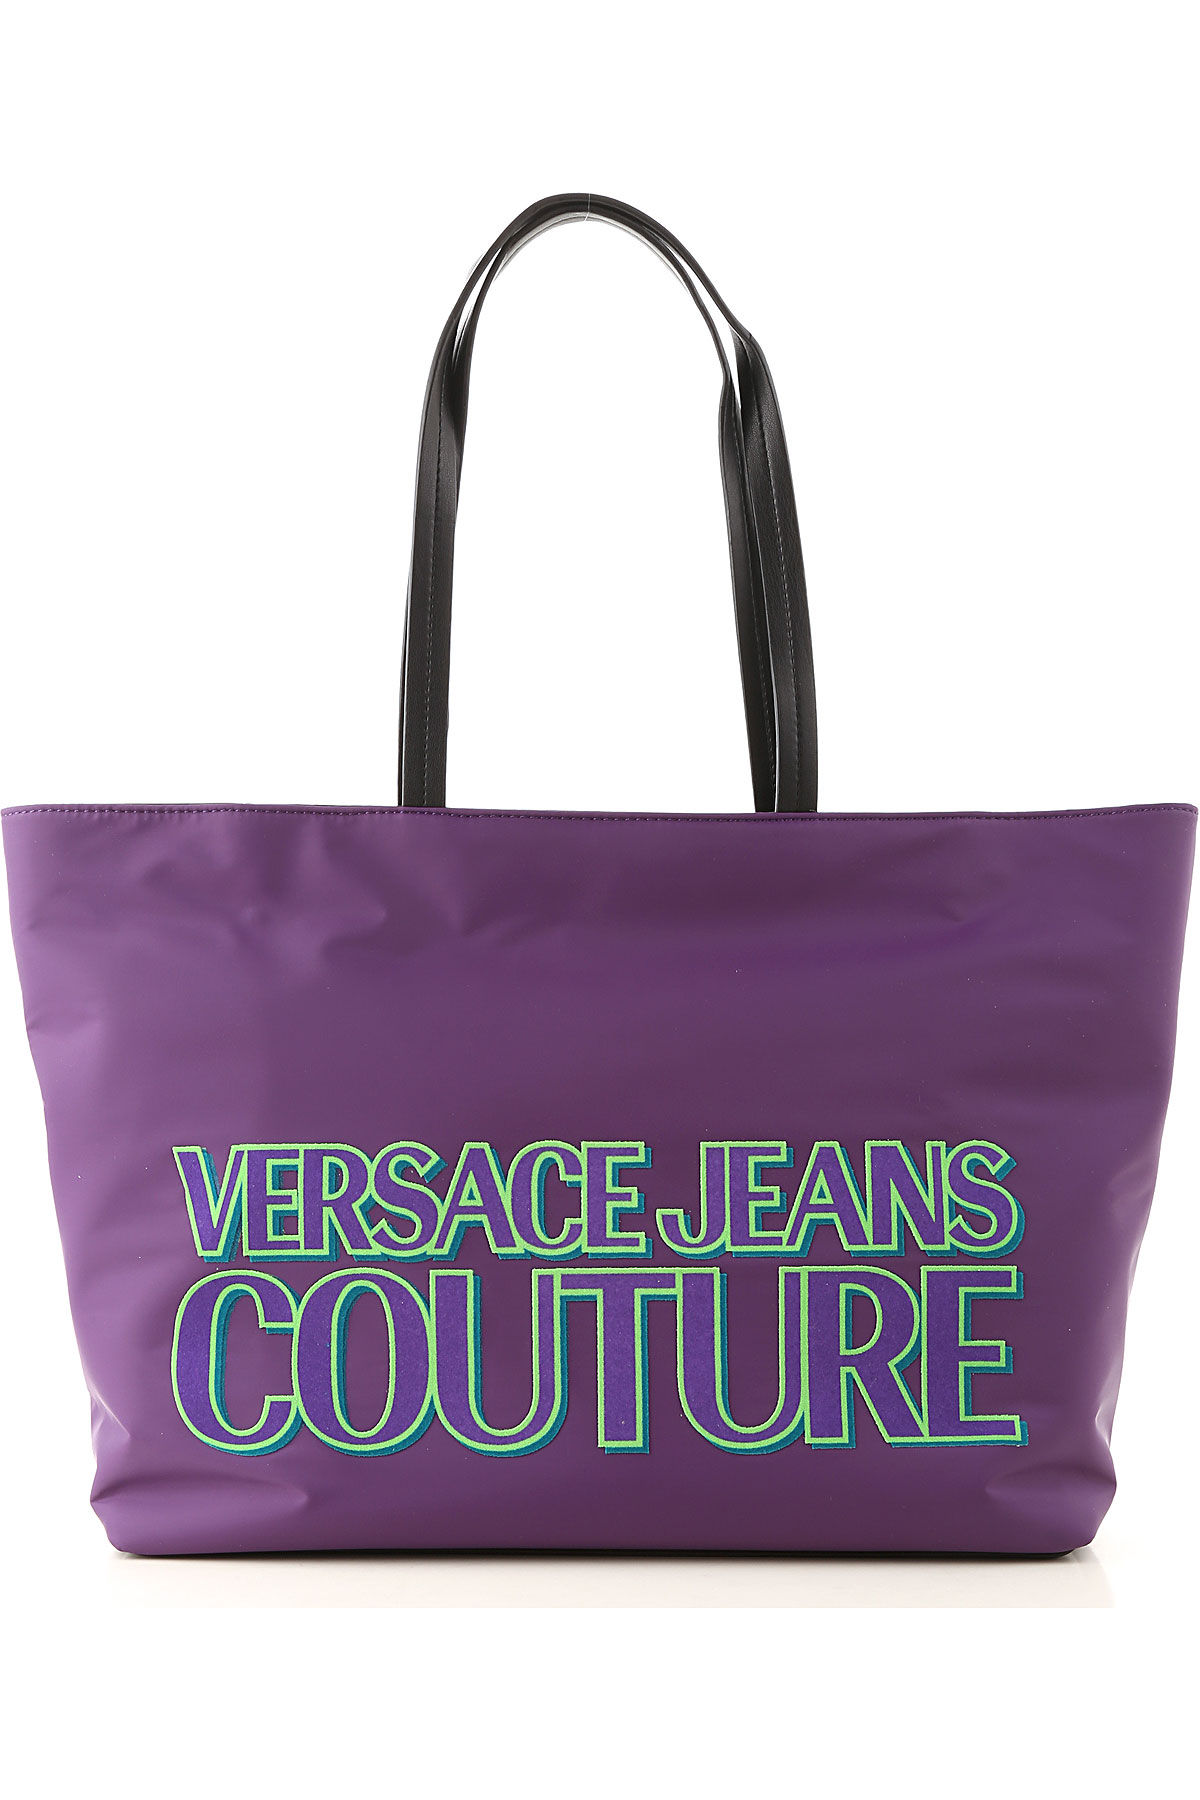 Versace Jeans Couture Tragetasche für Damen Günstig im Sale, Pupur, Nylon, 2017